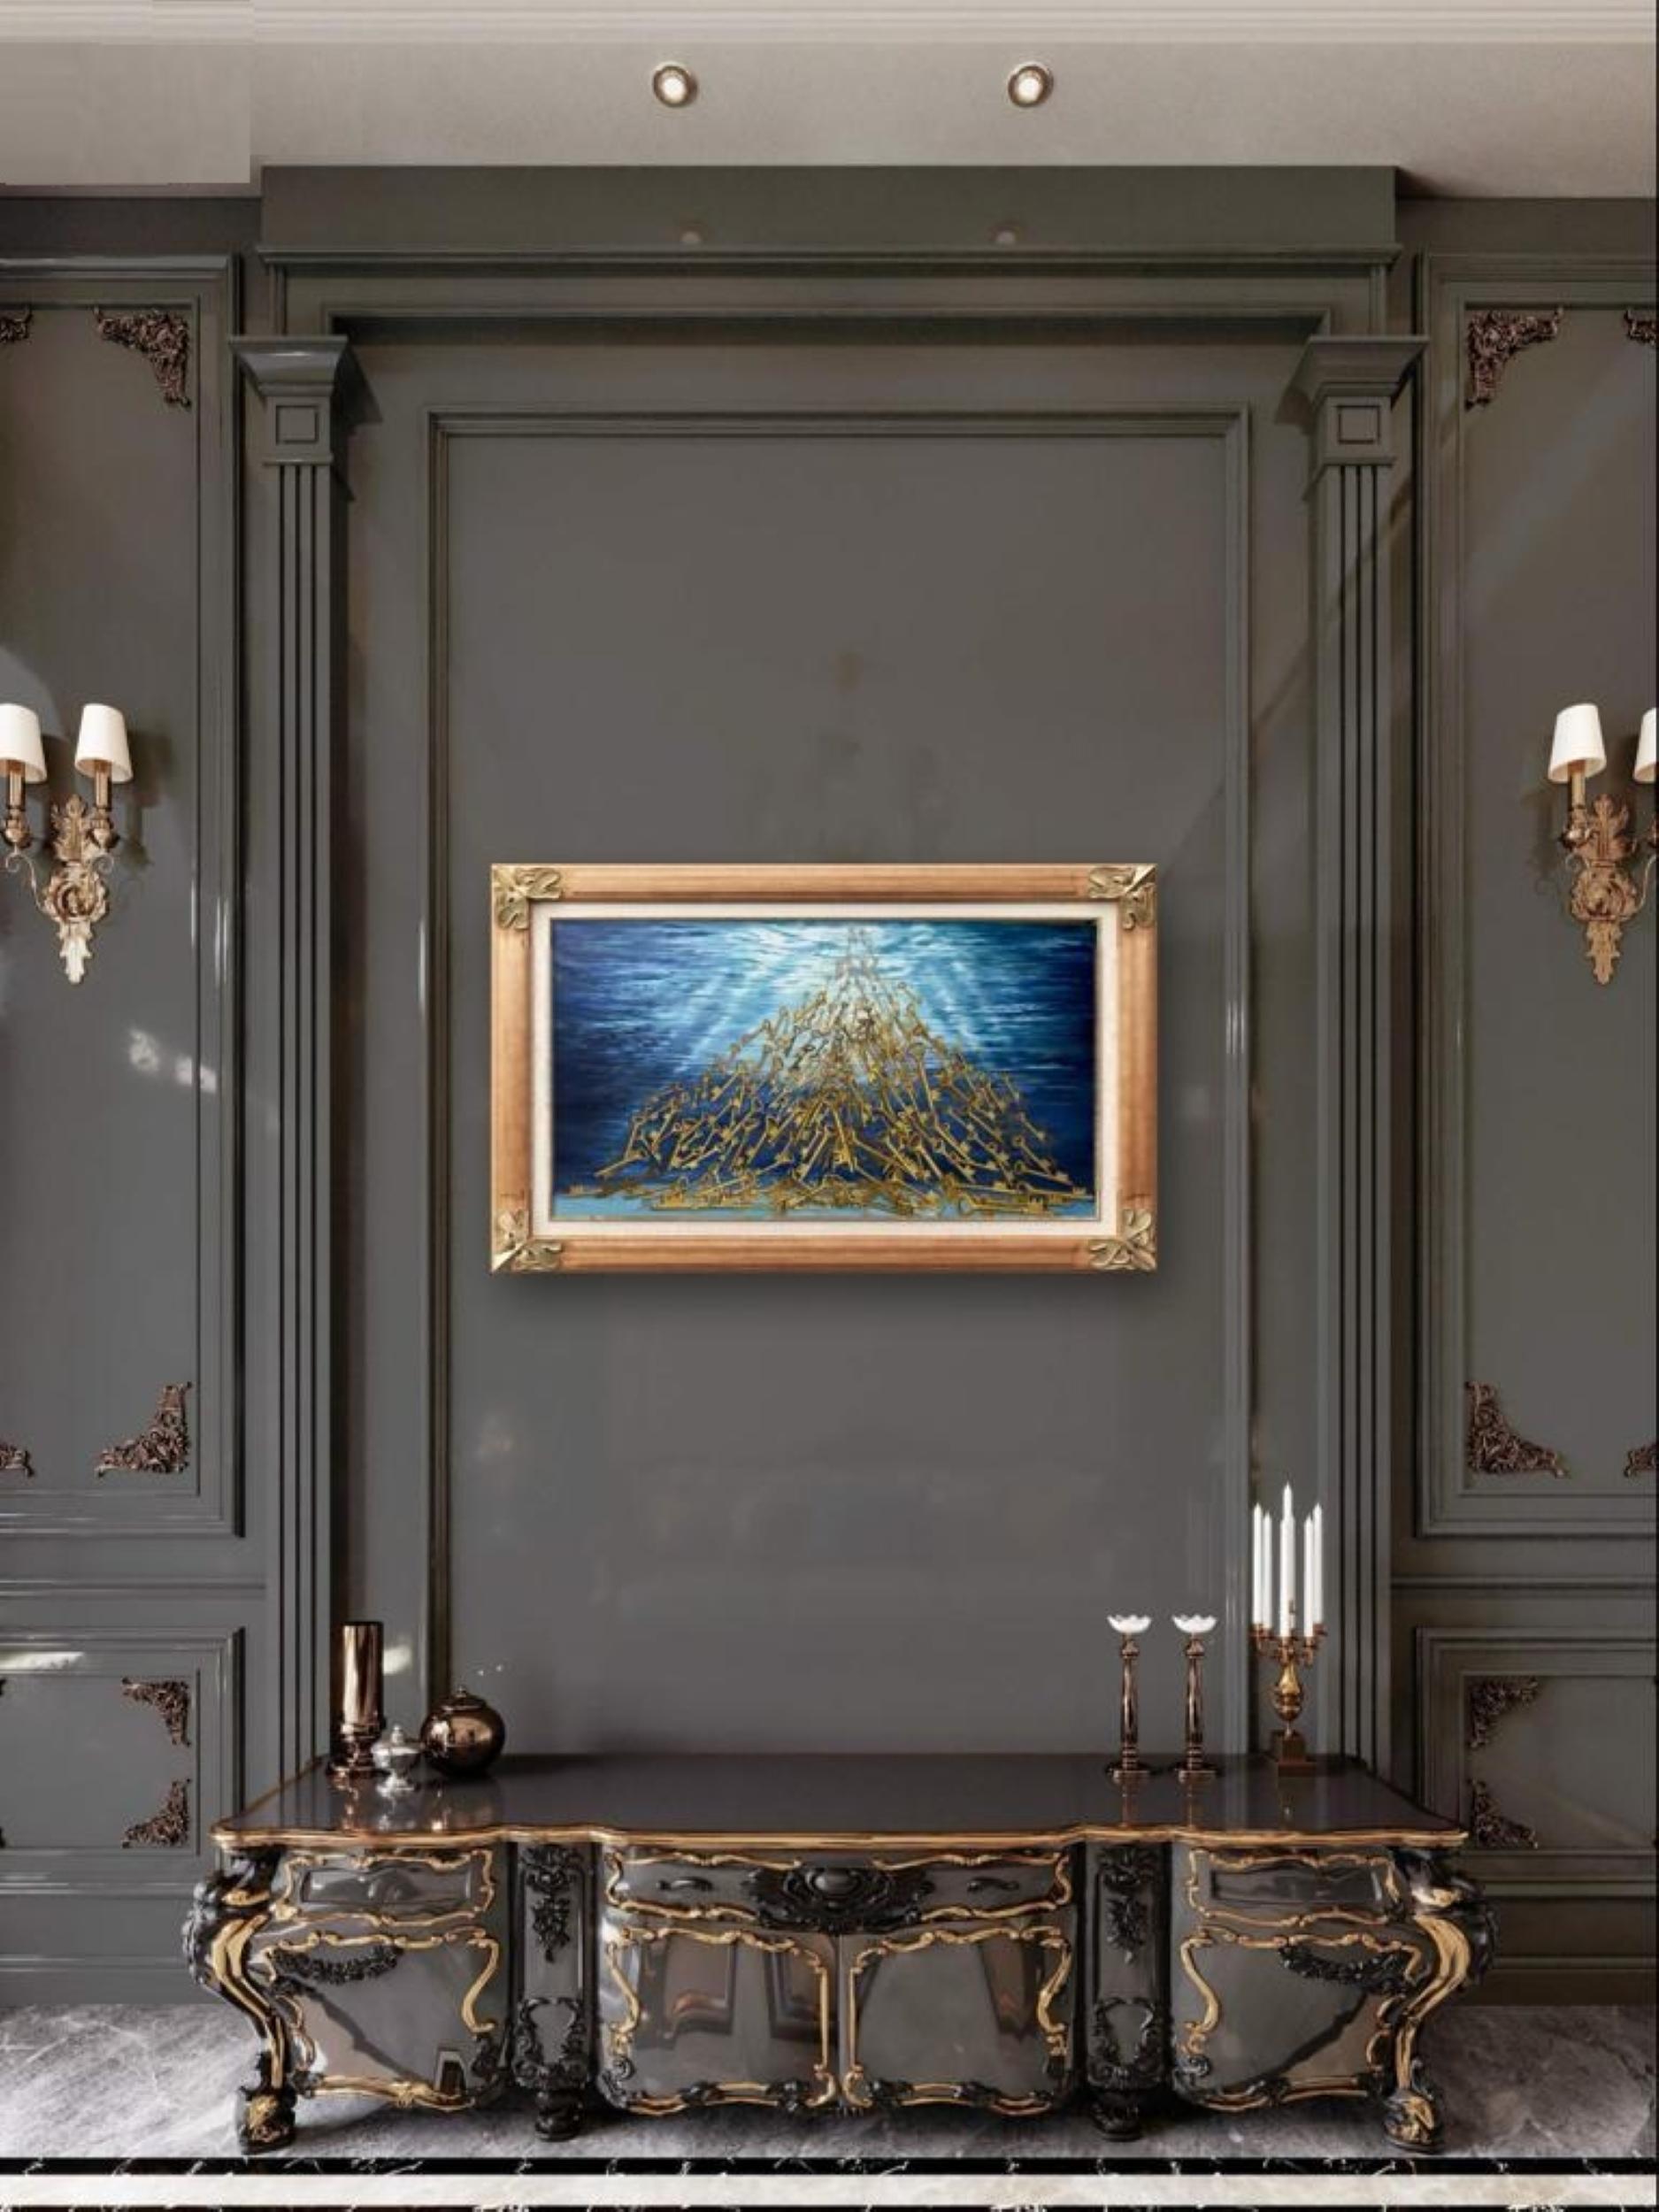 the Ticking Sound Under The Ocean ist Öl auf Leinwand von Hani Naji aus seiner Serie Objects and Preselection.  Hani Naji versucht, durch die Wiederholung von Objekten, die Elemente und Symbole sind, Themen und Bedeutung mit Hilfe des Surrealismus